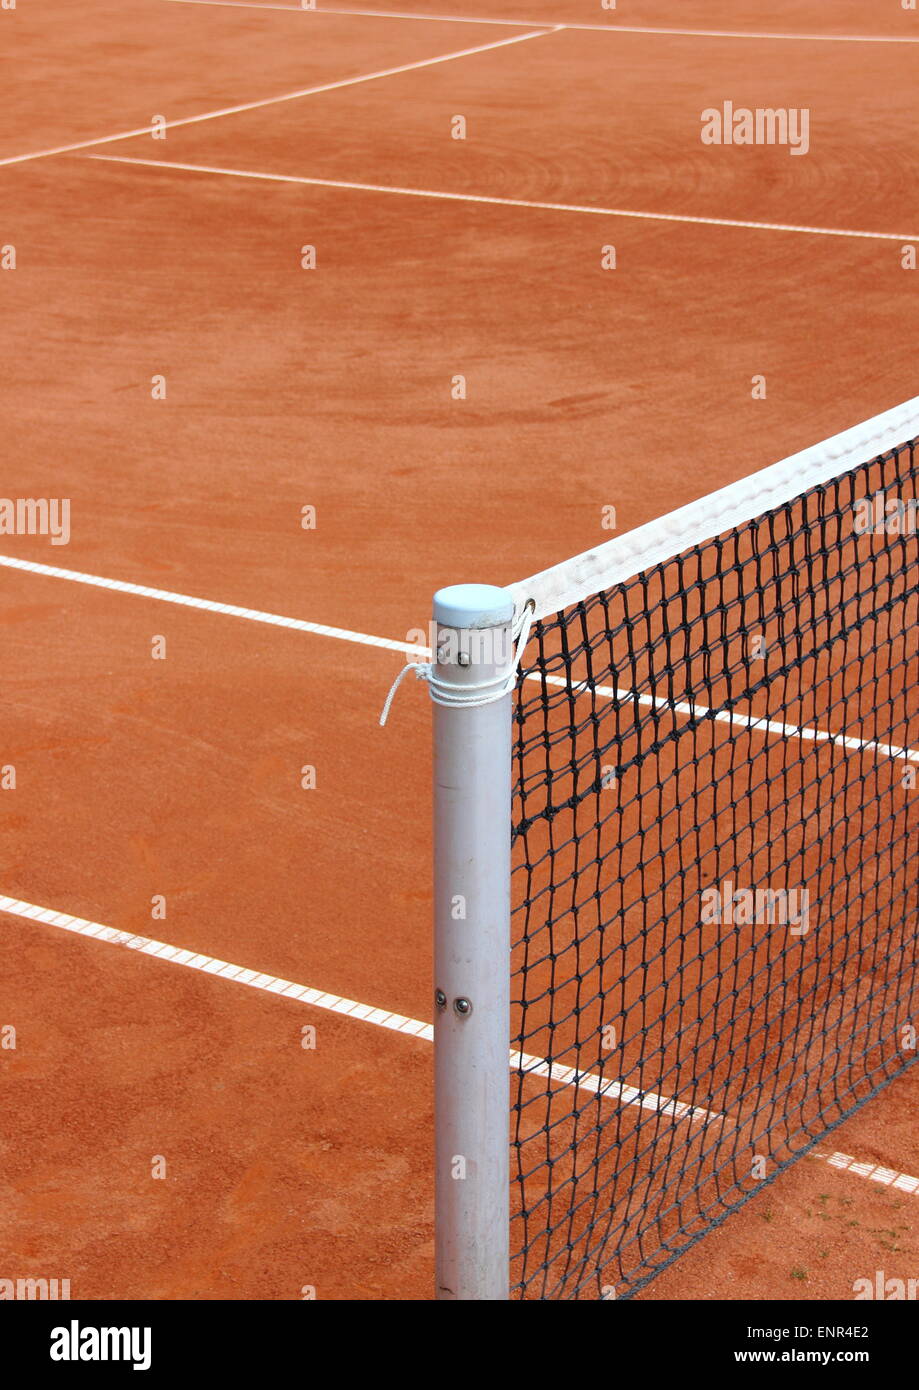 Filet de tennis au cour de gravier rouge vide Banque D'Images